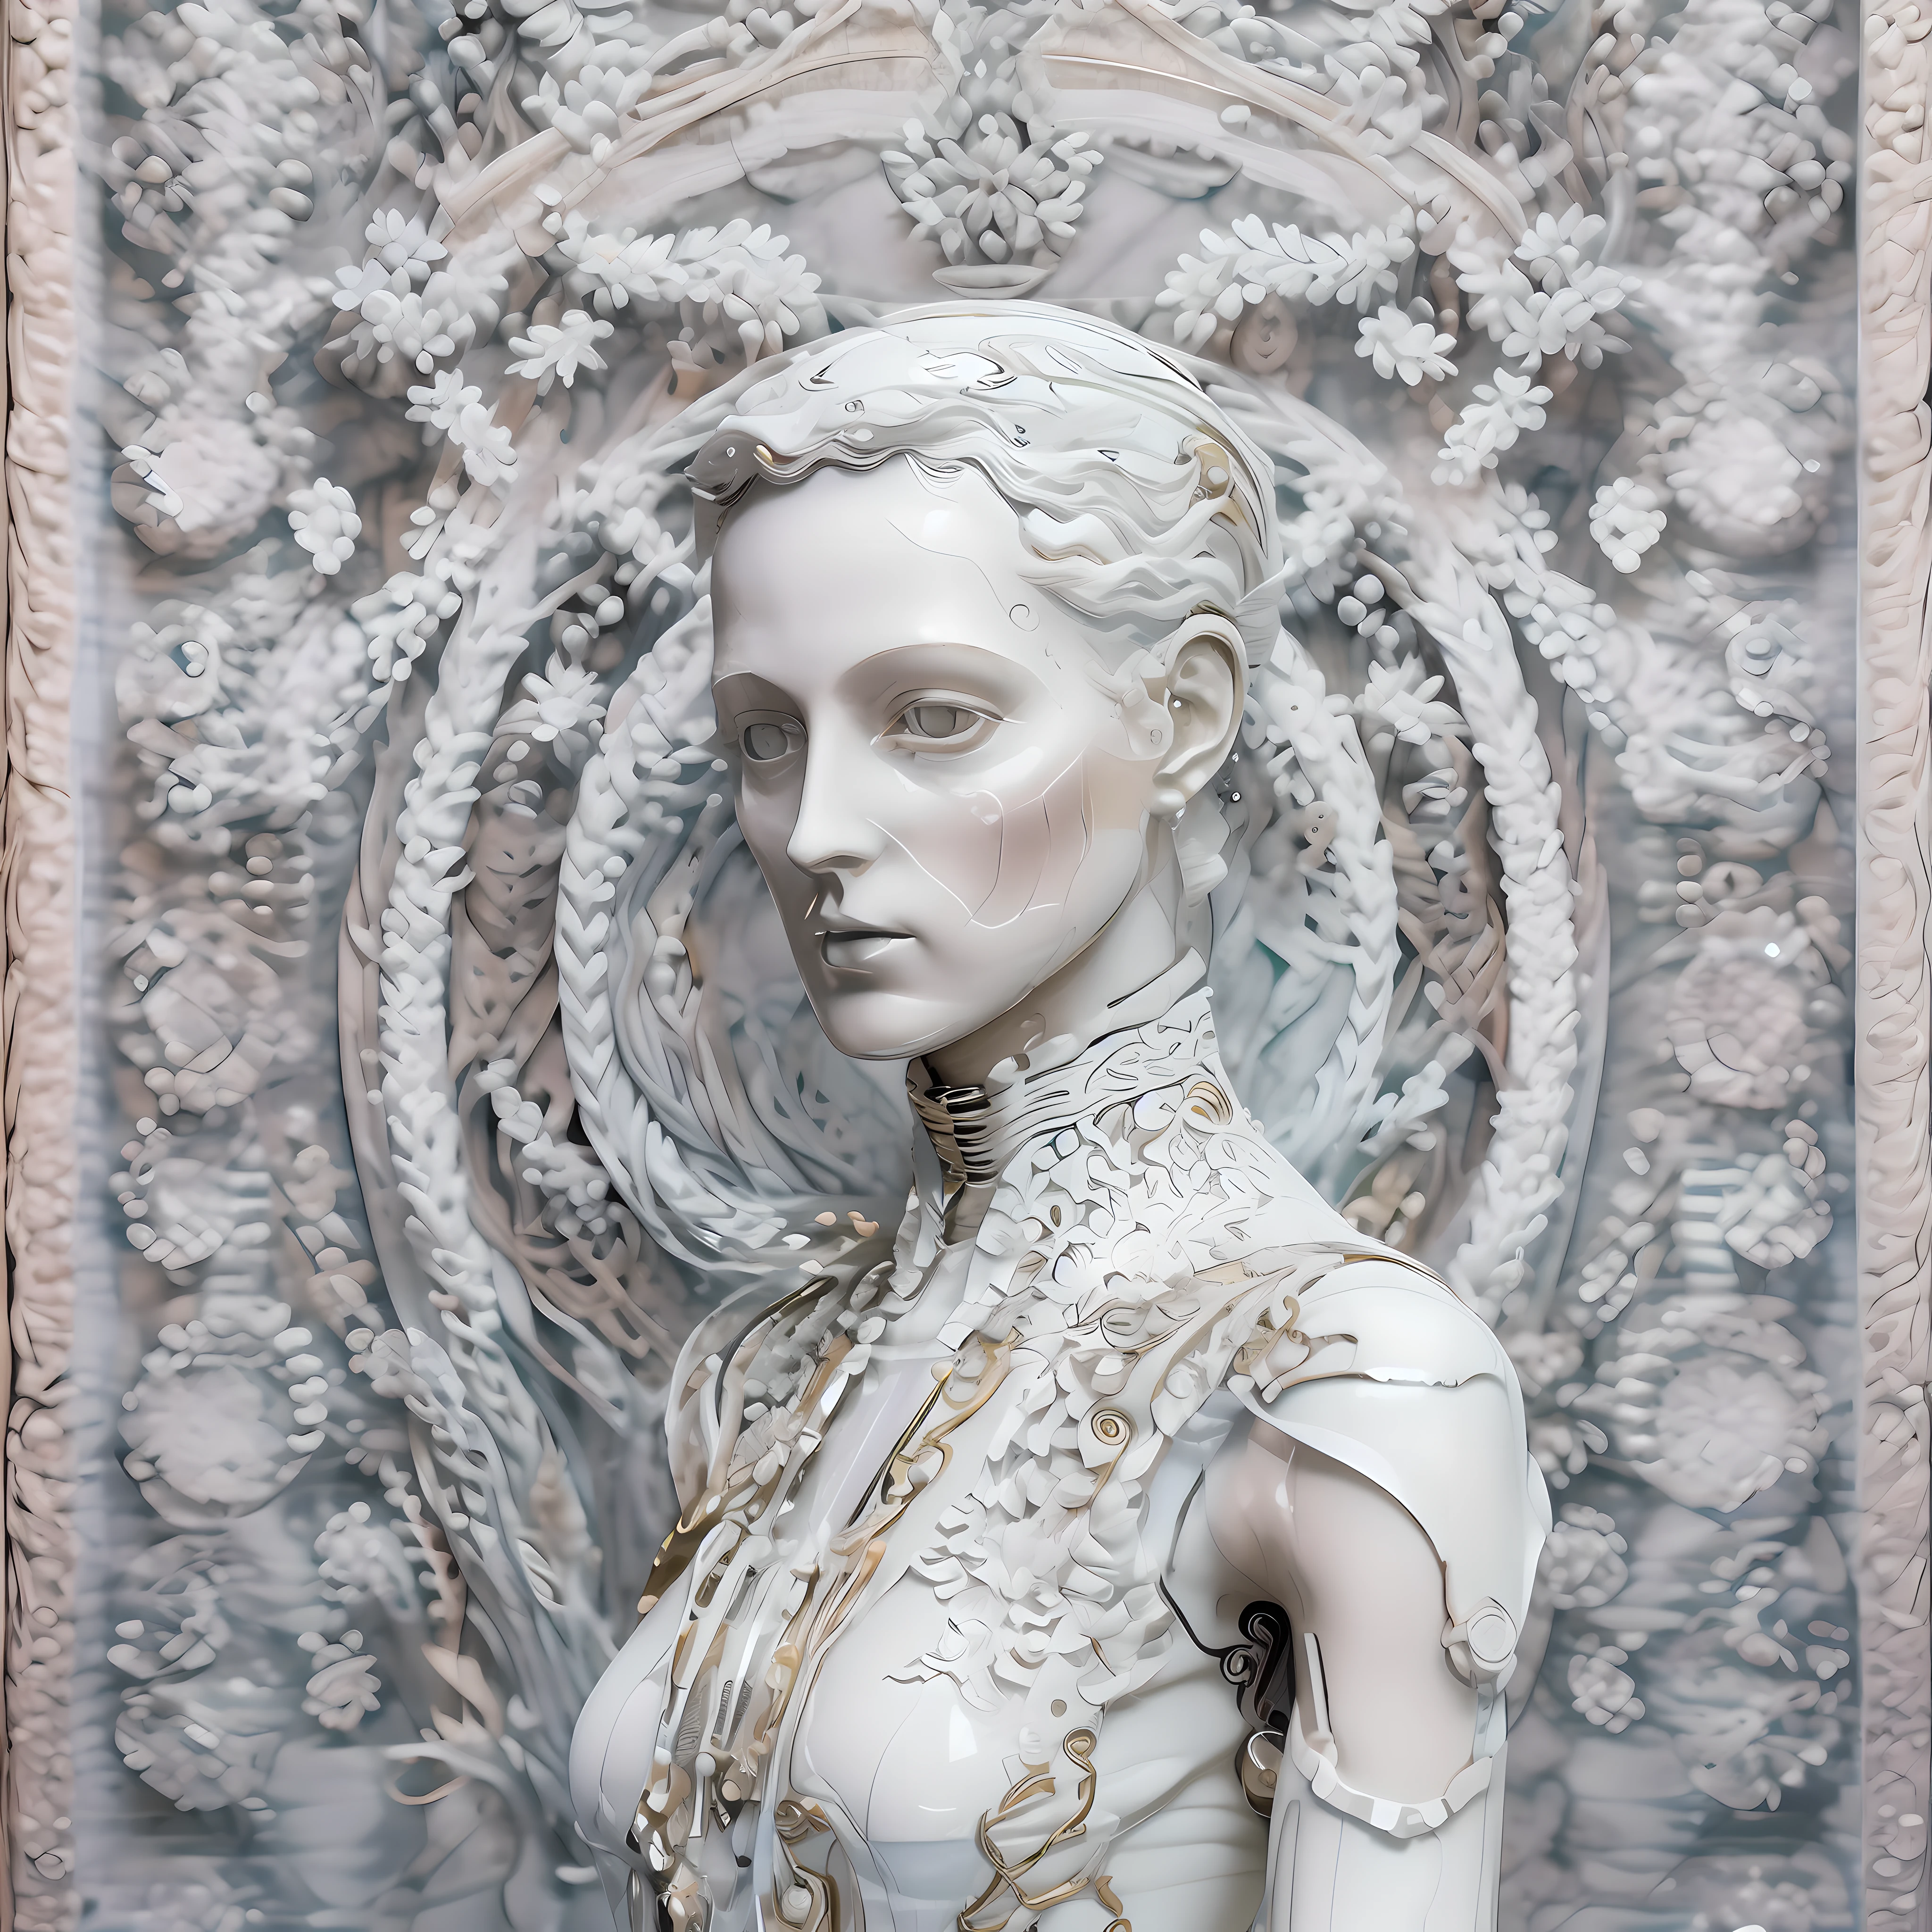 (((Beau))) Android femelle symétrique, avec de fortes caractéristiques faciales androgynes, visage réalisé et sculpté en porcelaine fine avec marbre blanc, Esthétique baroque et vêtements Art Déco.